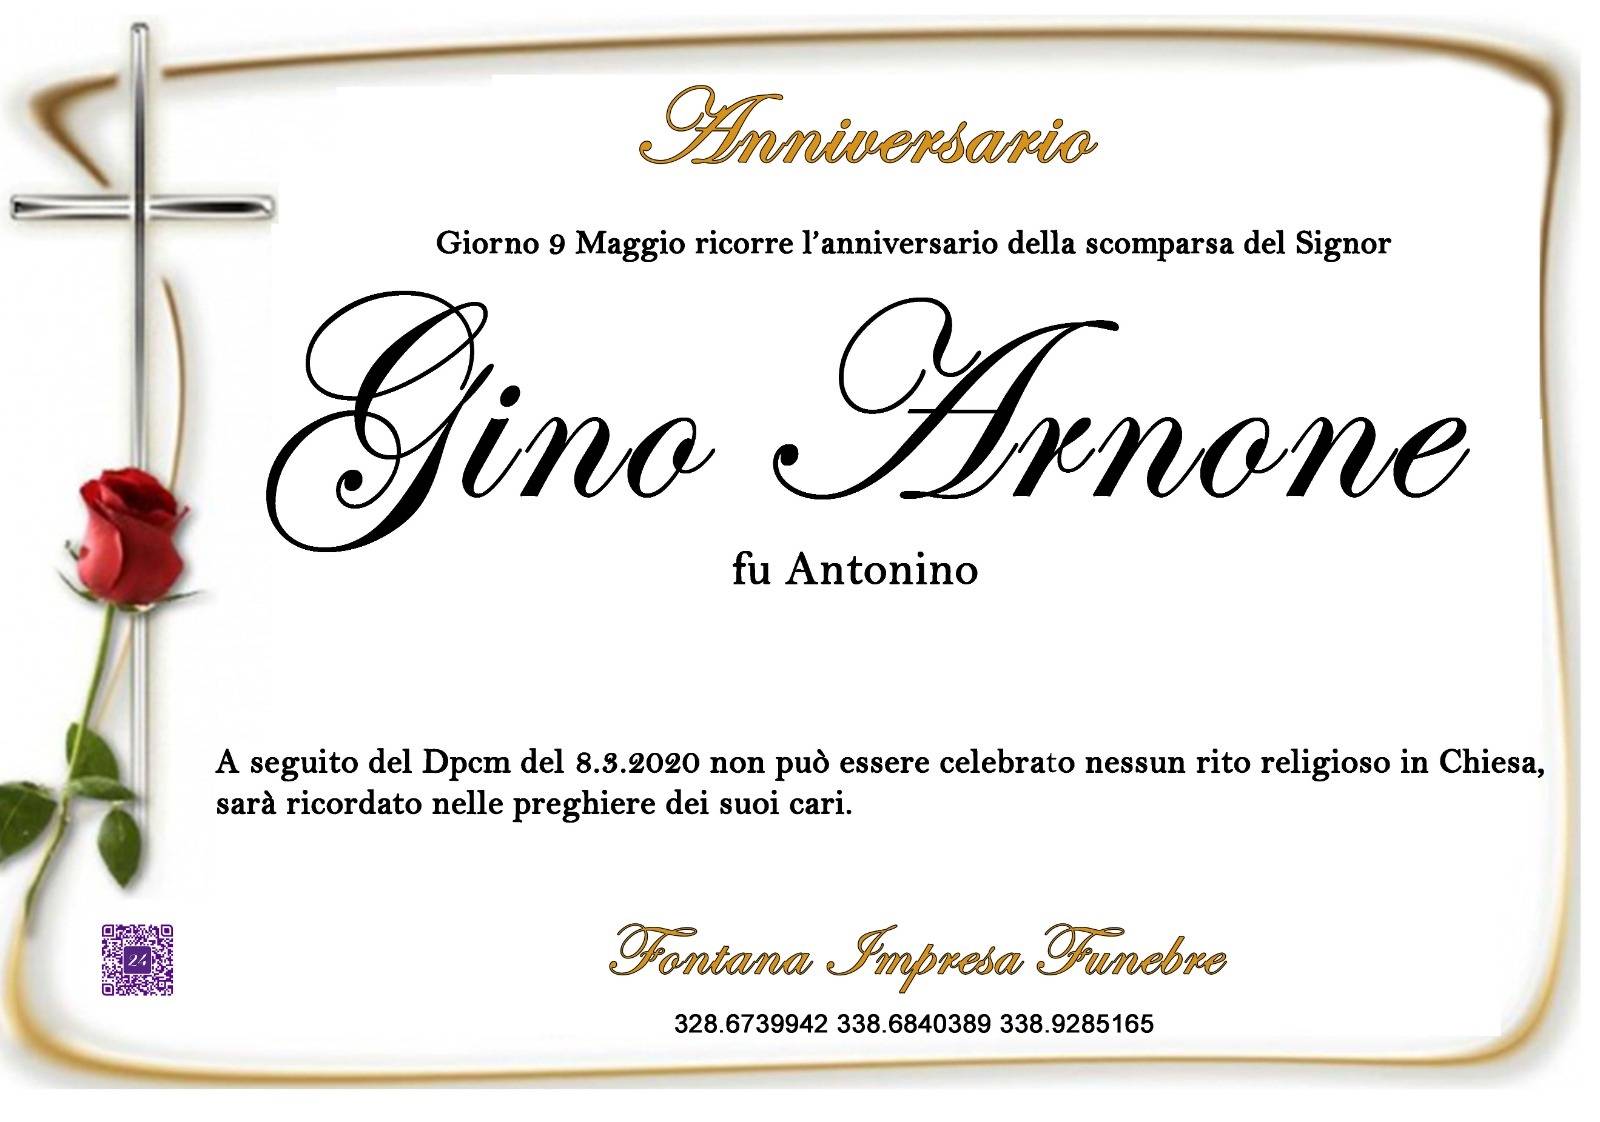 Gino Arnone